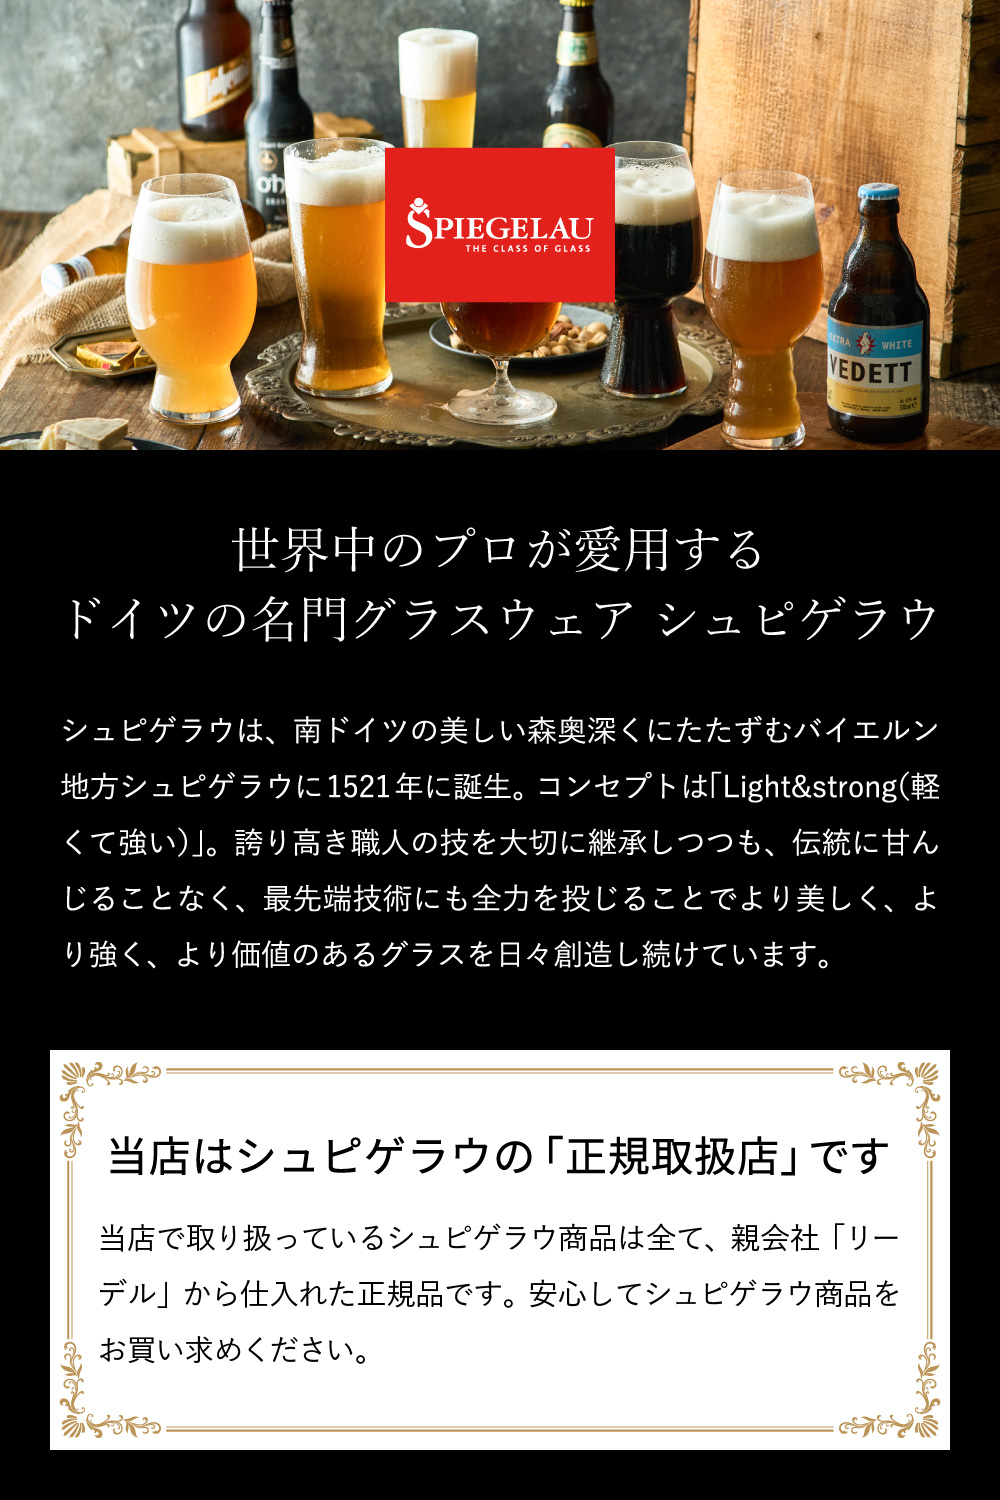 シュピゲラウ クラフトビアグラス クラフトビール・テイスティング・キット(3個入) 4991693 / 食洗機対応